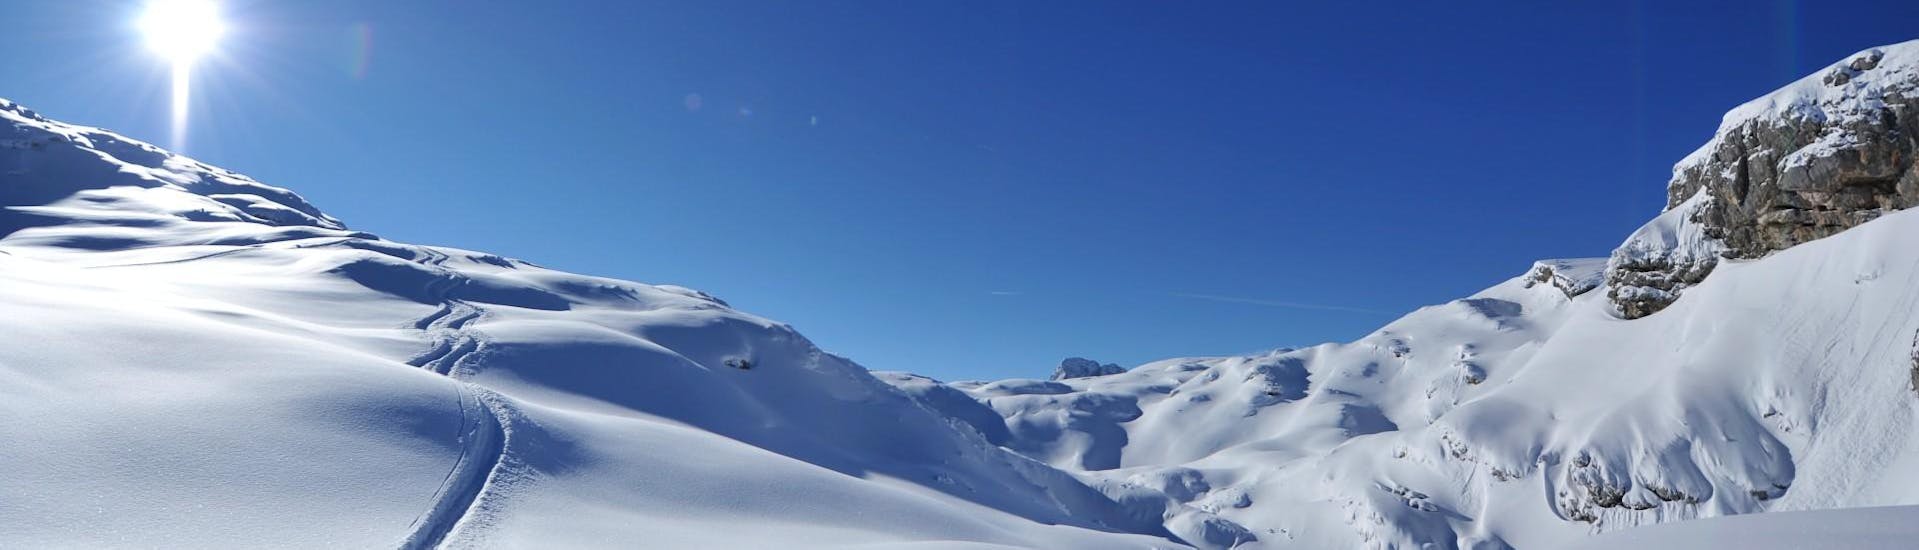 Während des privaten Snowboardkurs für Kinder & Erwachsene aller Levels der Skischule Obertraun können die Gäste die einzigartige Region Dachstein Krippenstein erkunden.